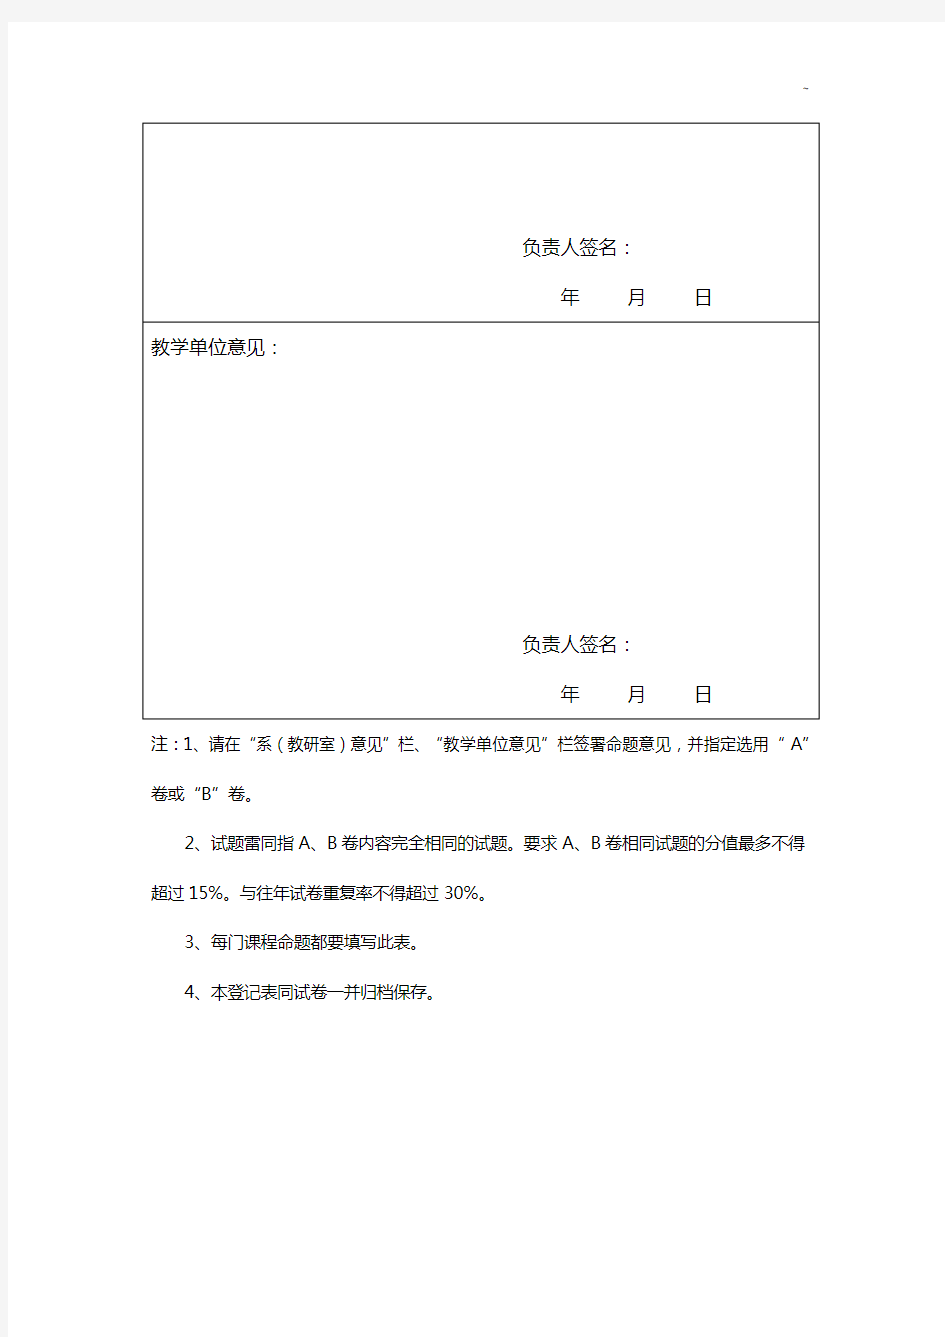 惠州学院期末考试命题审批表